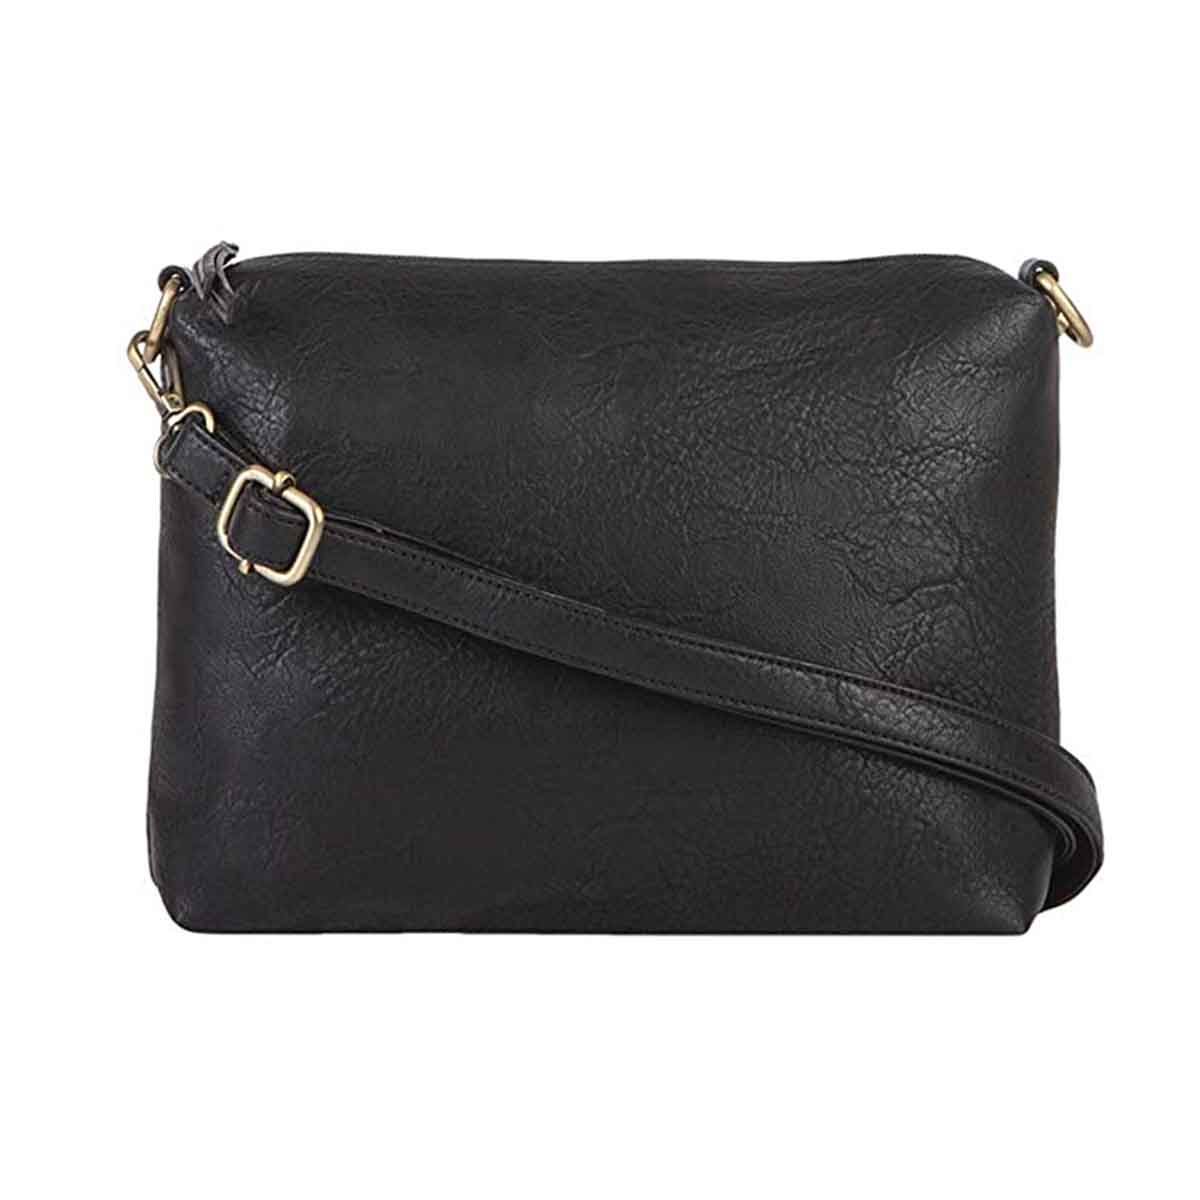 Mona B Black Handbag for Women | Zipper Tote Bag for Grocery, Shopping, Travel | Shoulder Bags for Women: Set of 3 (Black)